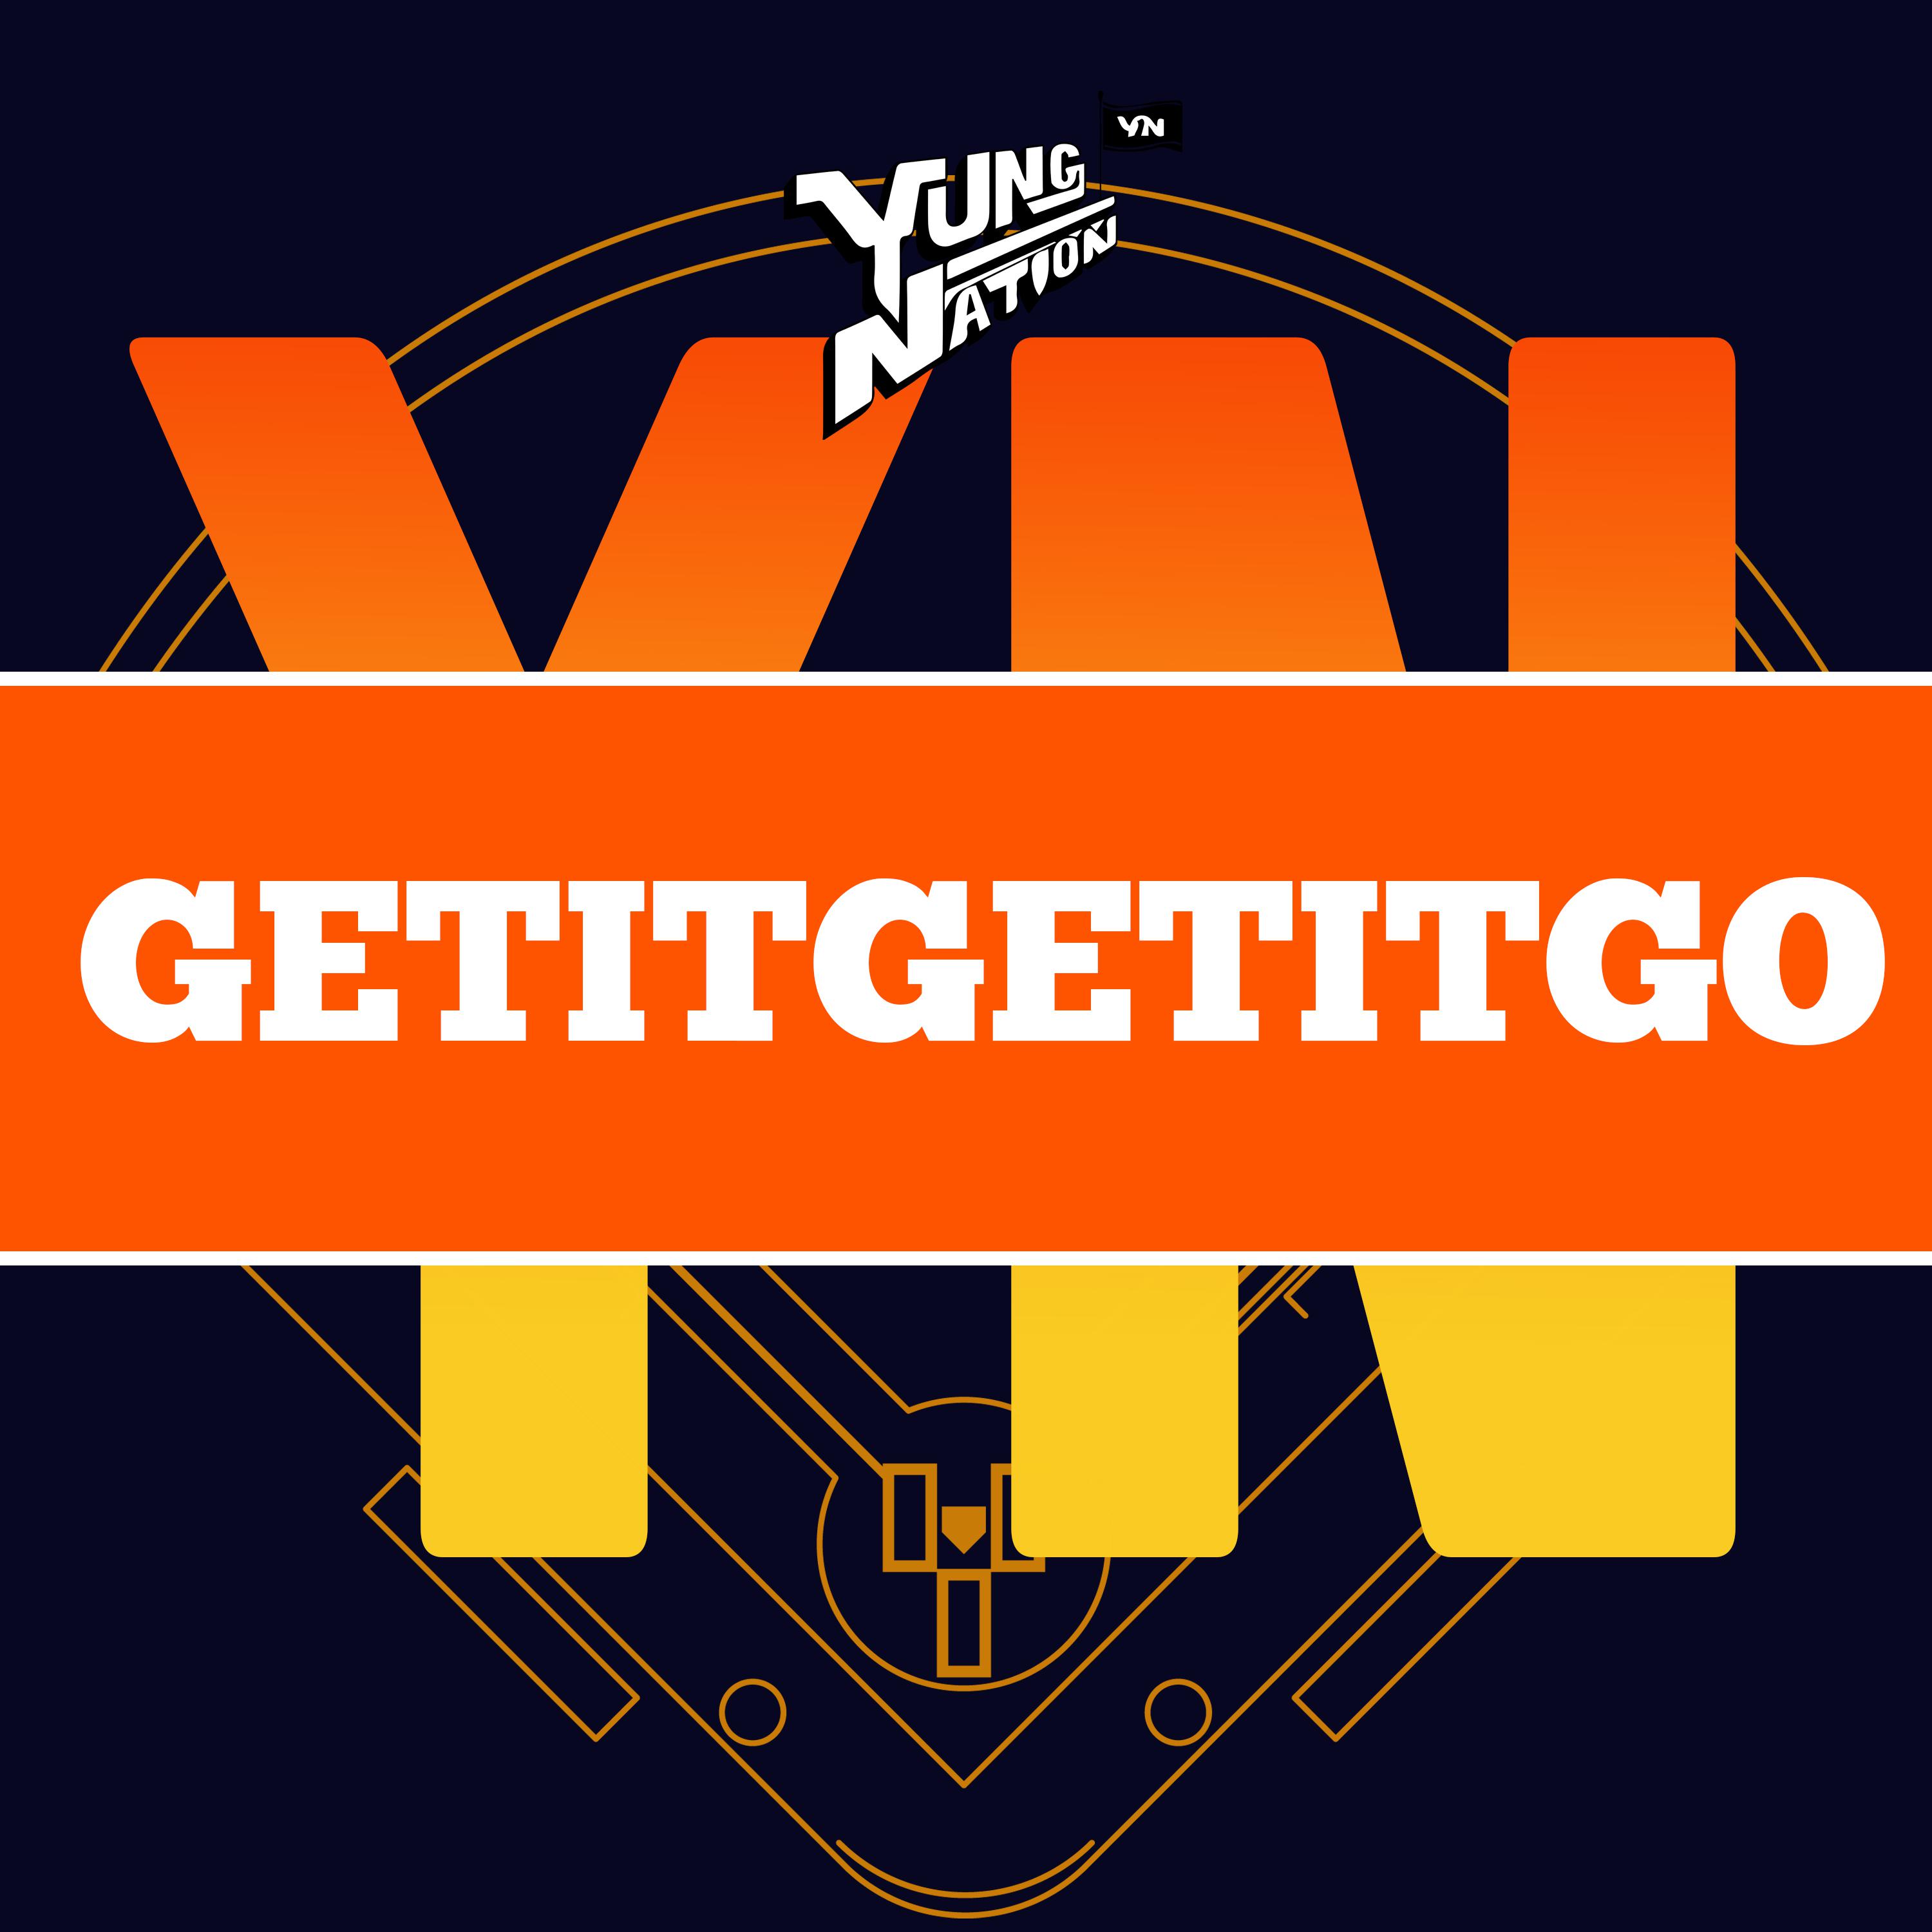 Yung Nation - GetItGetItGo